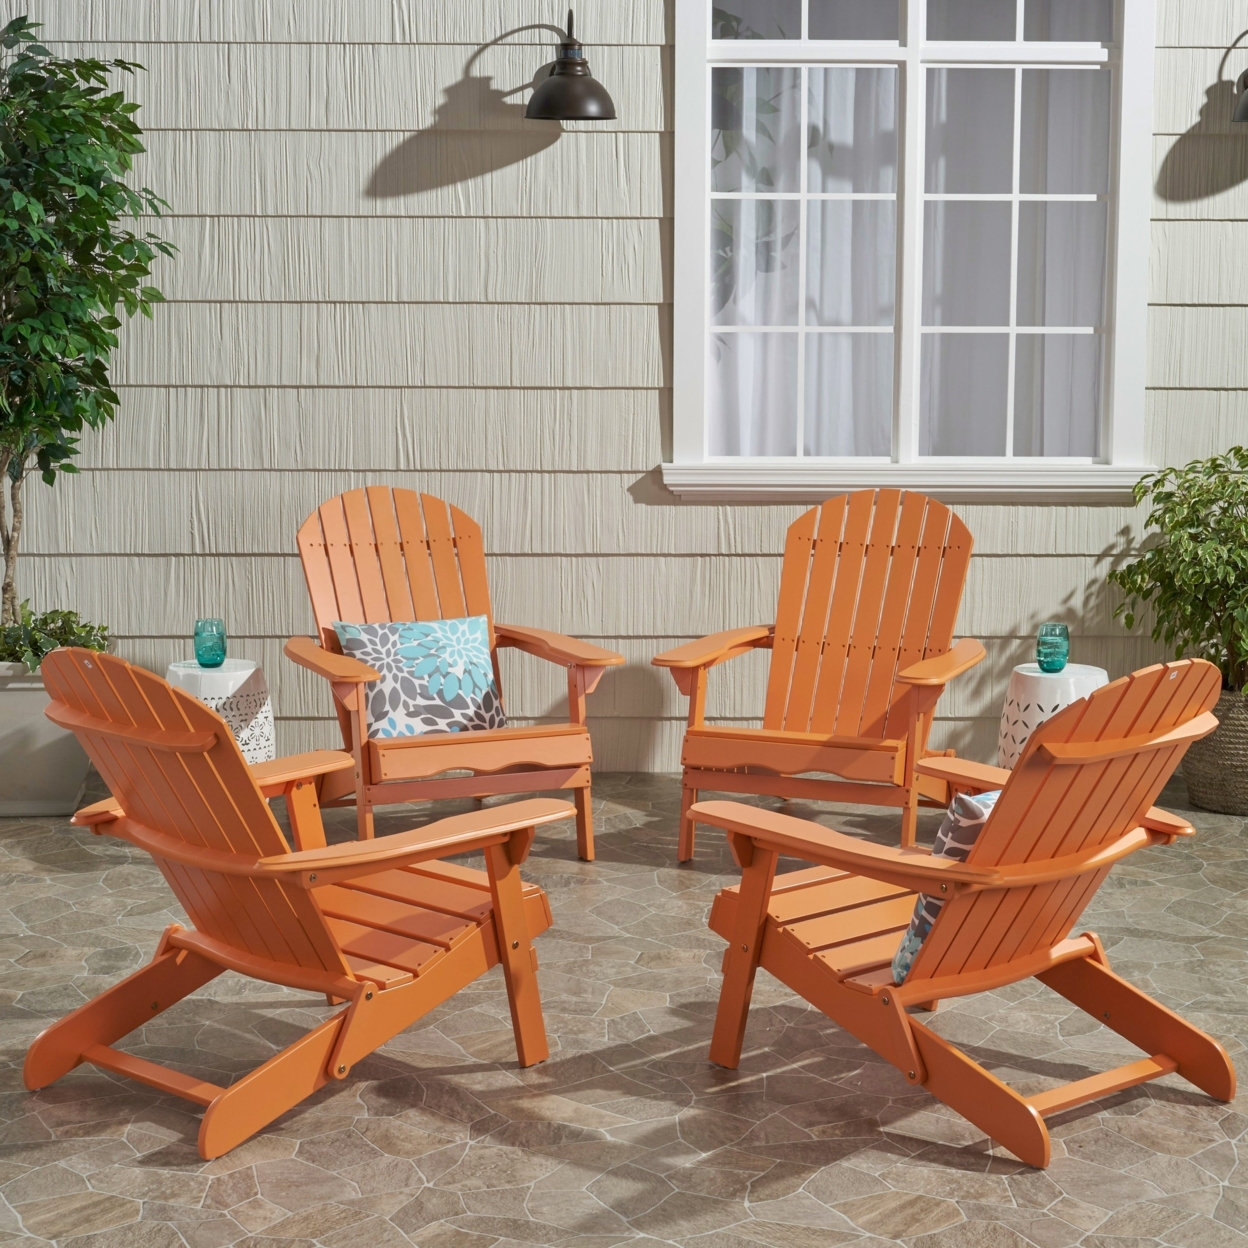 Milan Outdoor Acacia Wood Folding Adirondack Chair - Tangerine (set Of 4)